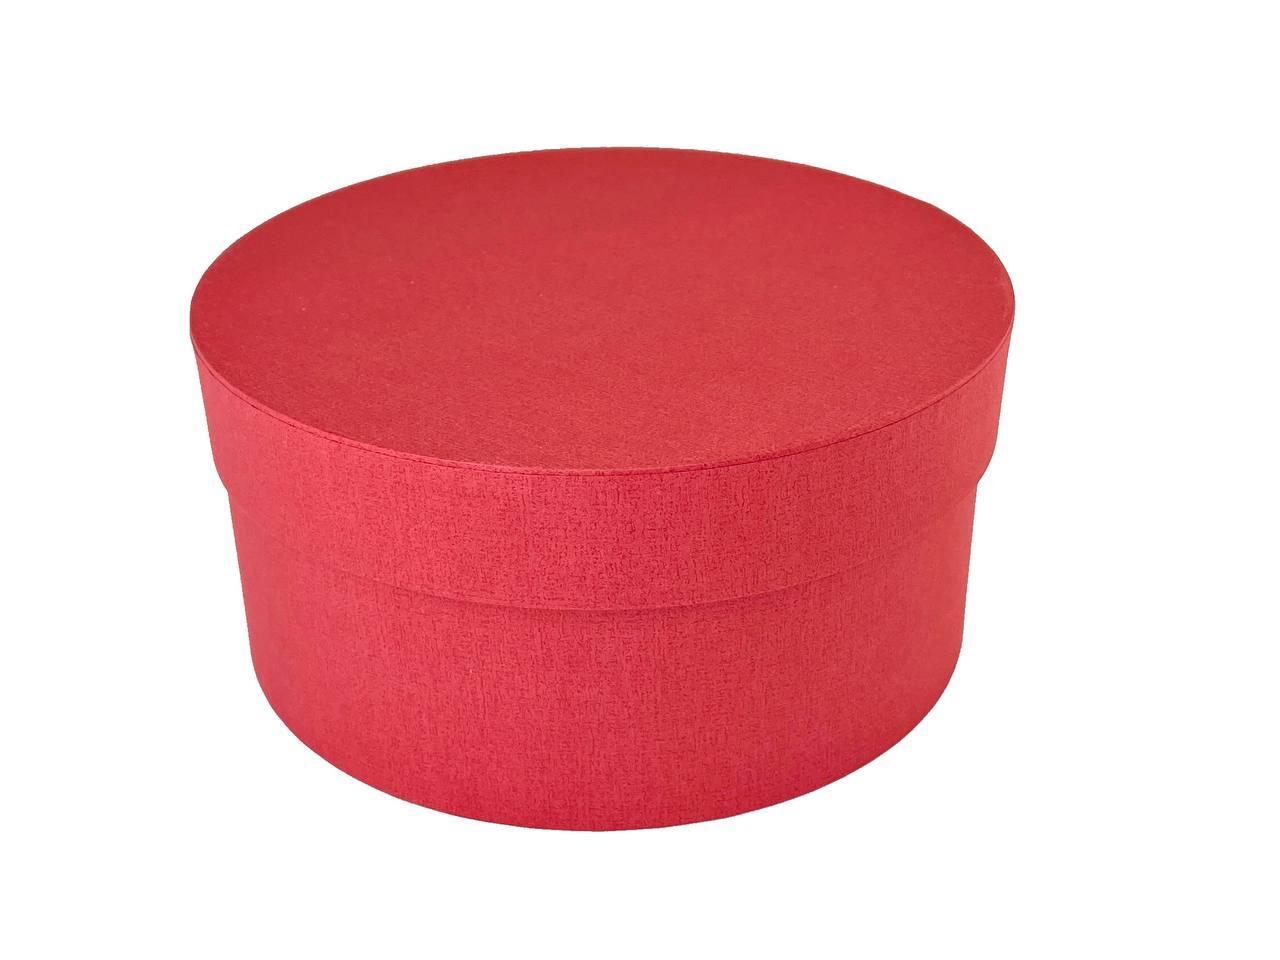 Картонная подарочная шляпная коробка с крышкой для цветов и подарков диаметр 20 см, красная